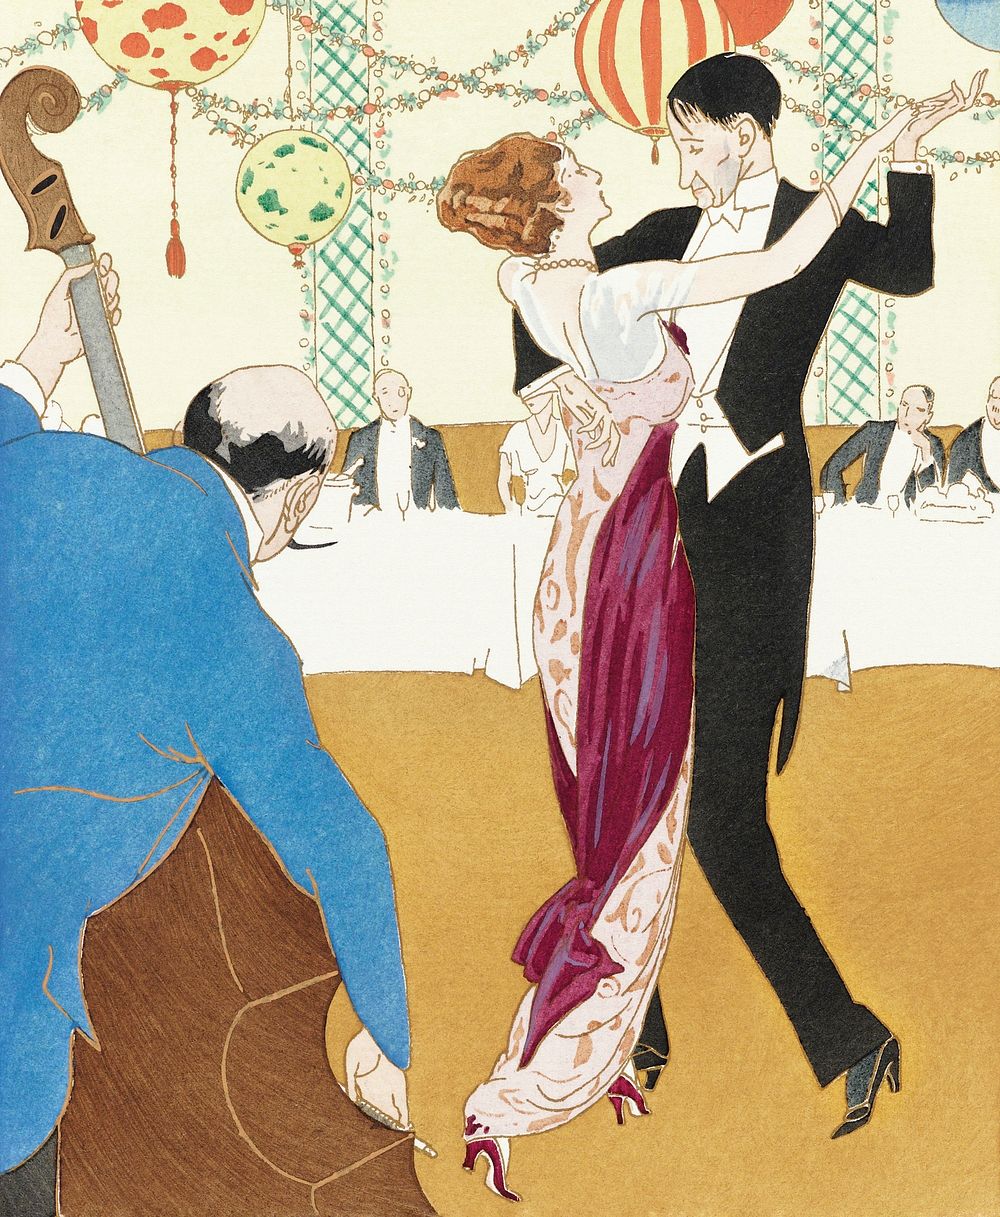 Couple dancing together illustration, remixed from vintage illustration published in Gazette du Bon Ton